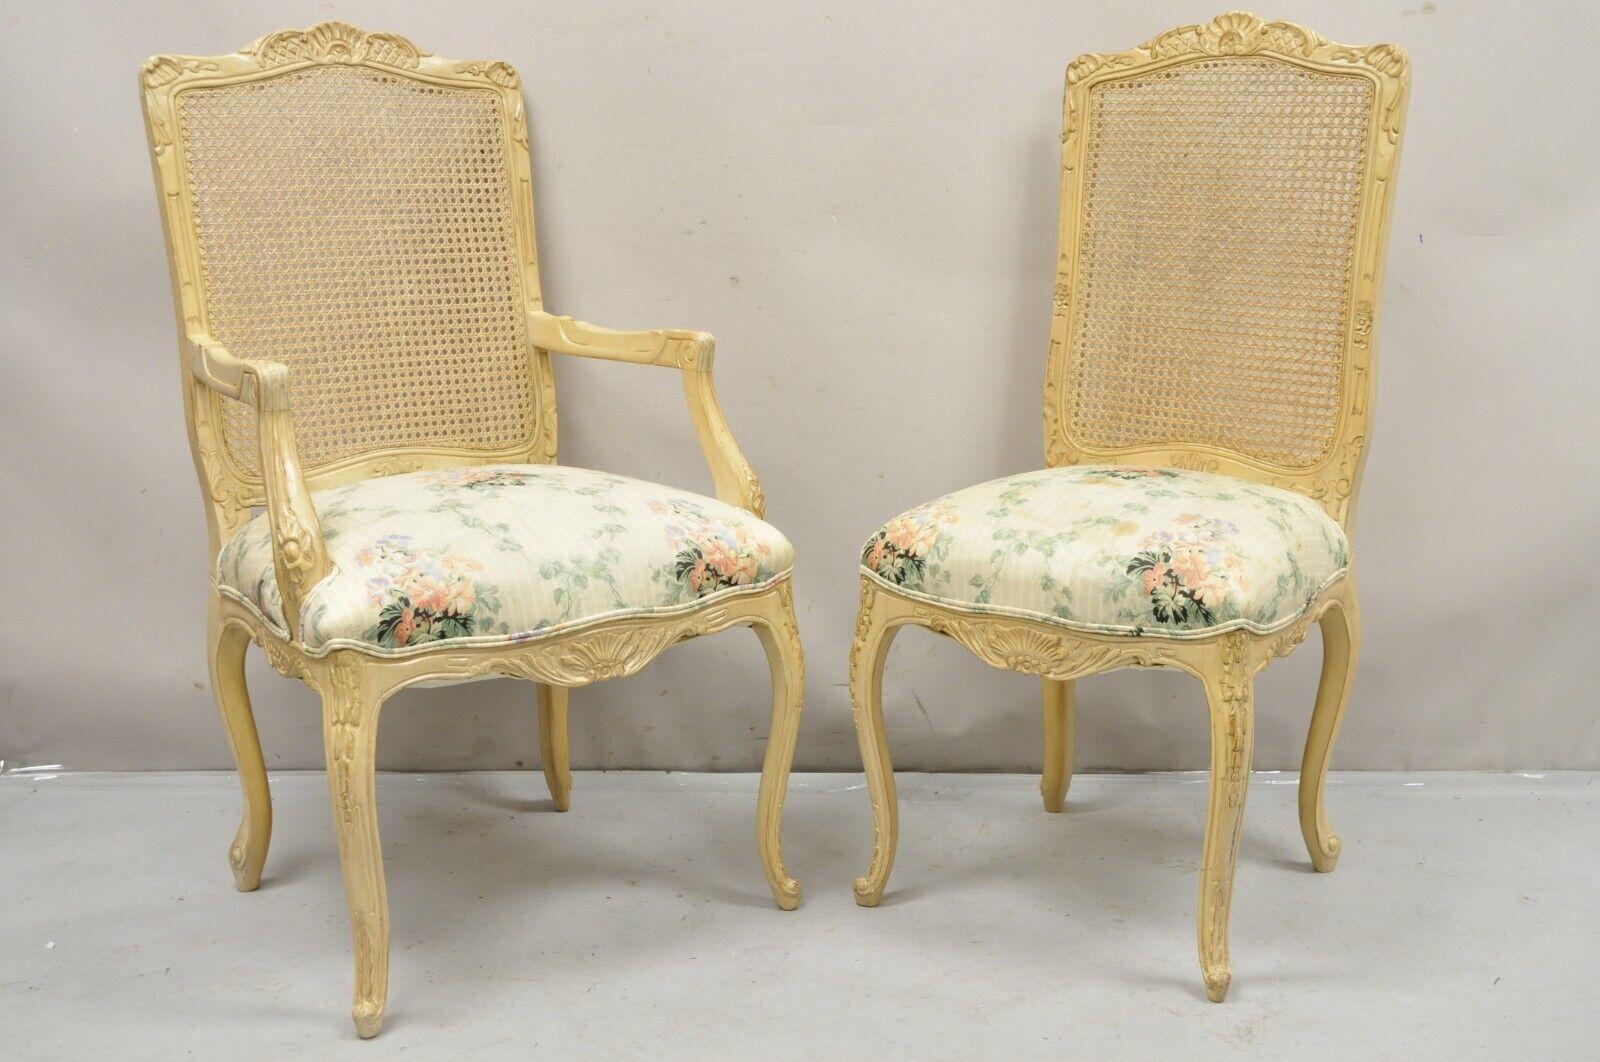 Vintage French Louis XV Provincial Style Cane Back Cream Dining Chairs- Set von 6. Artikel verfügt über (2) Sessel, (4) Seite Stühle, distressed weiß gewaschen beige Finish, Zuckerrohr zurück, schön geschnitzt Frames, sehr schöne Vintage-Set. CIRCA